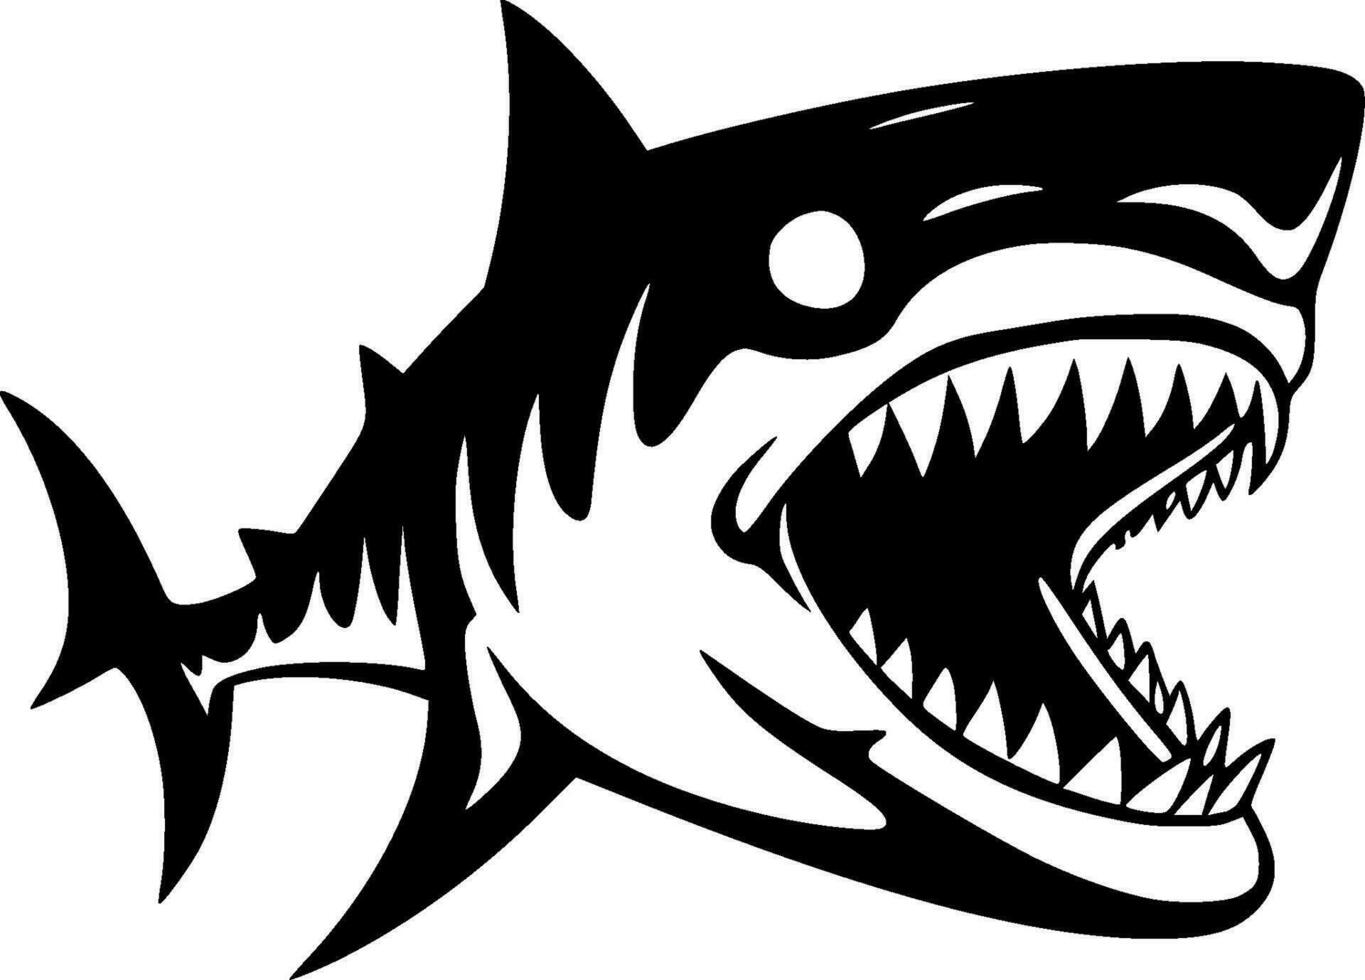 requin, minimaliste et Facile silhouette - vecteur illustration